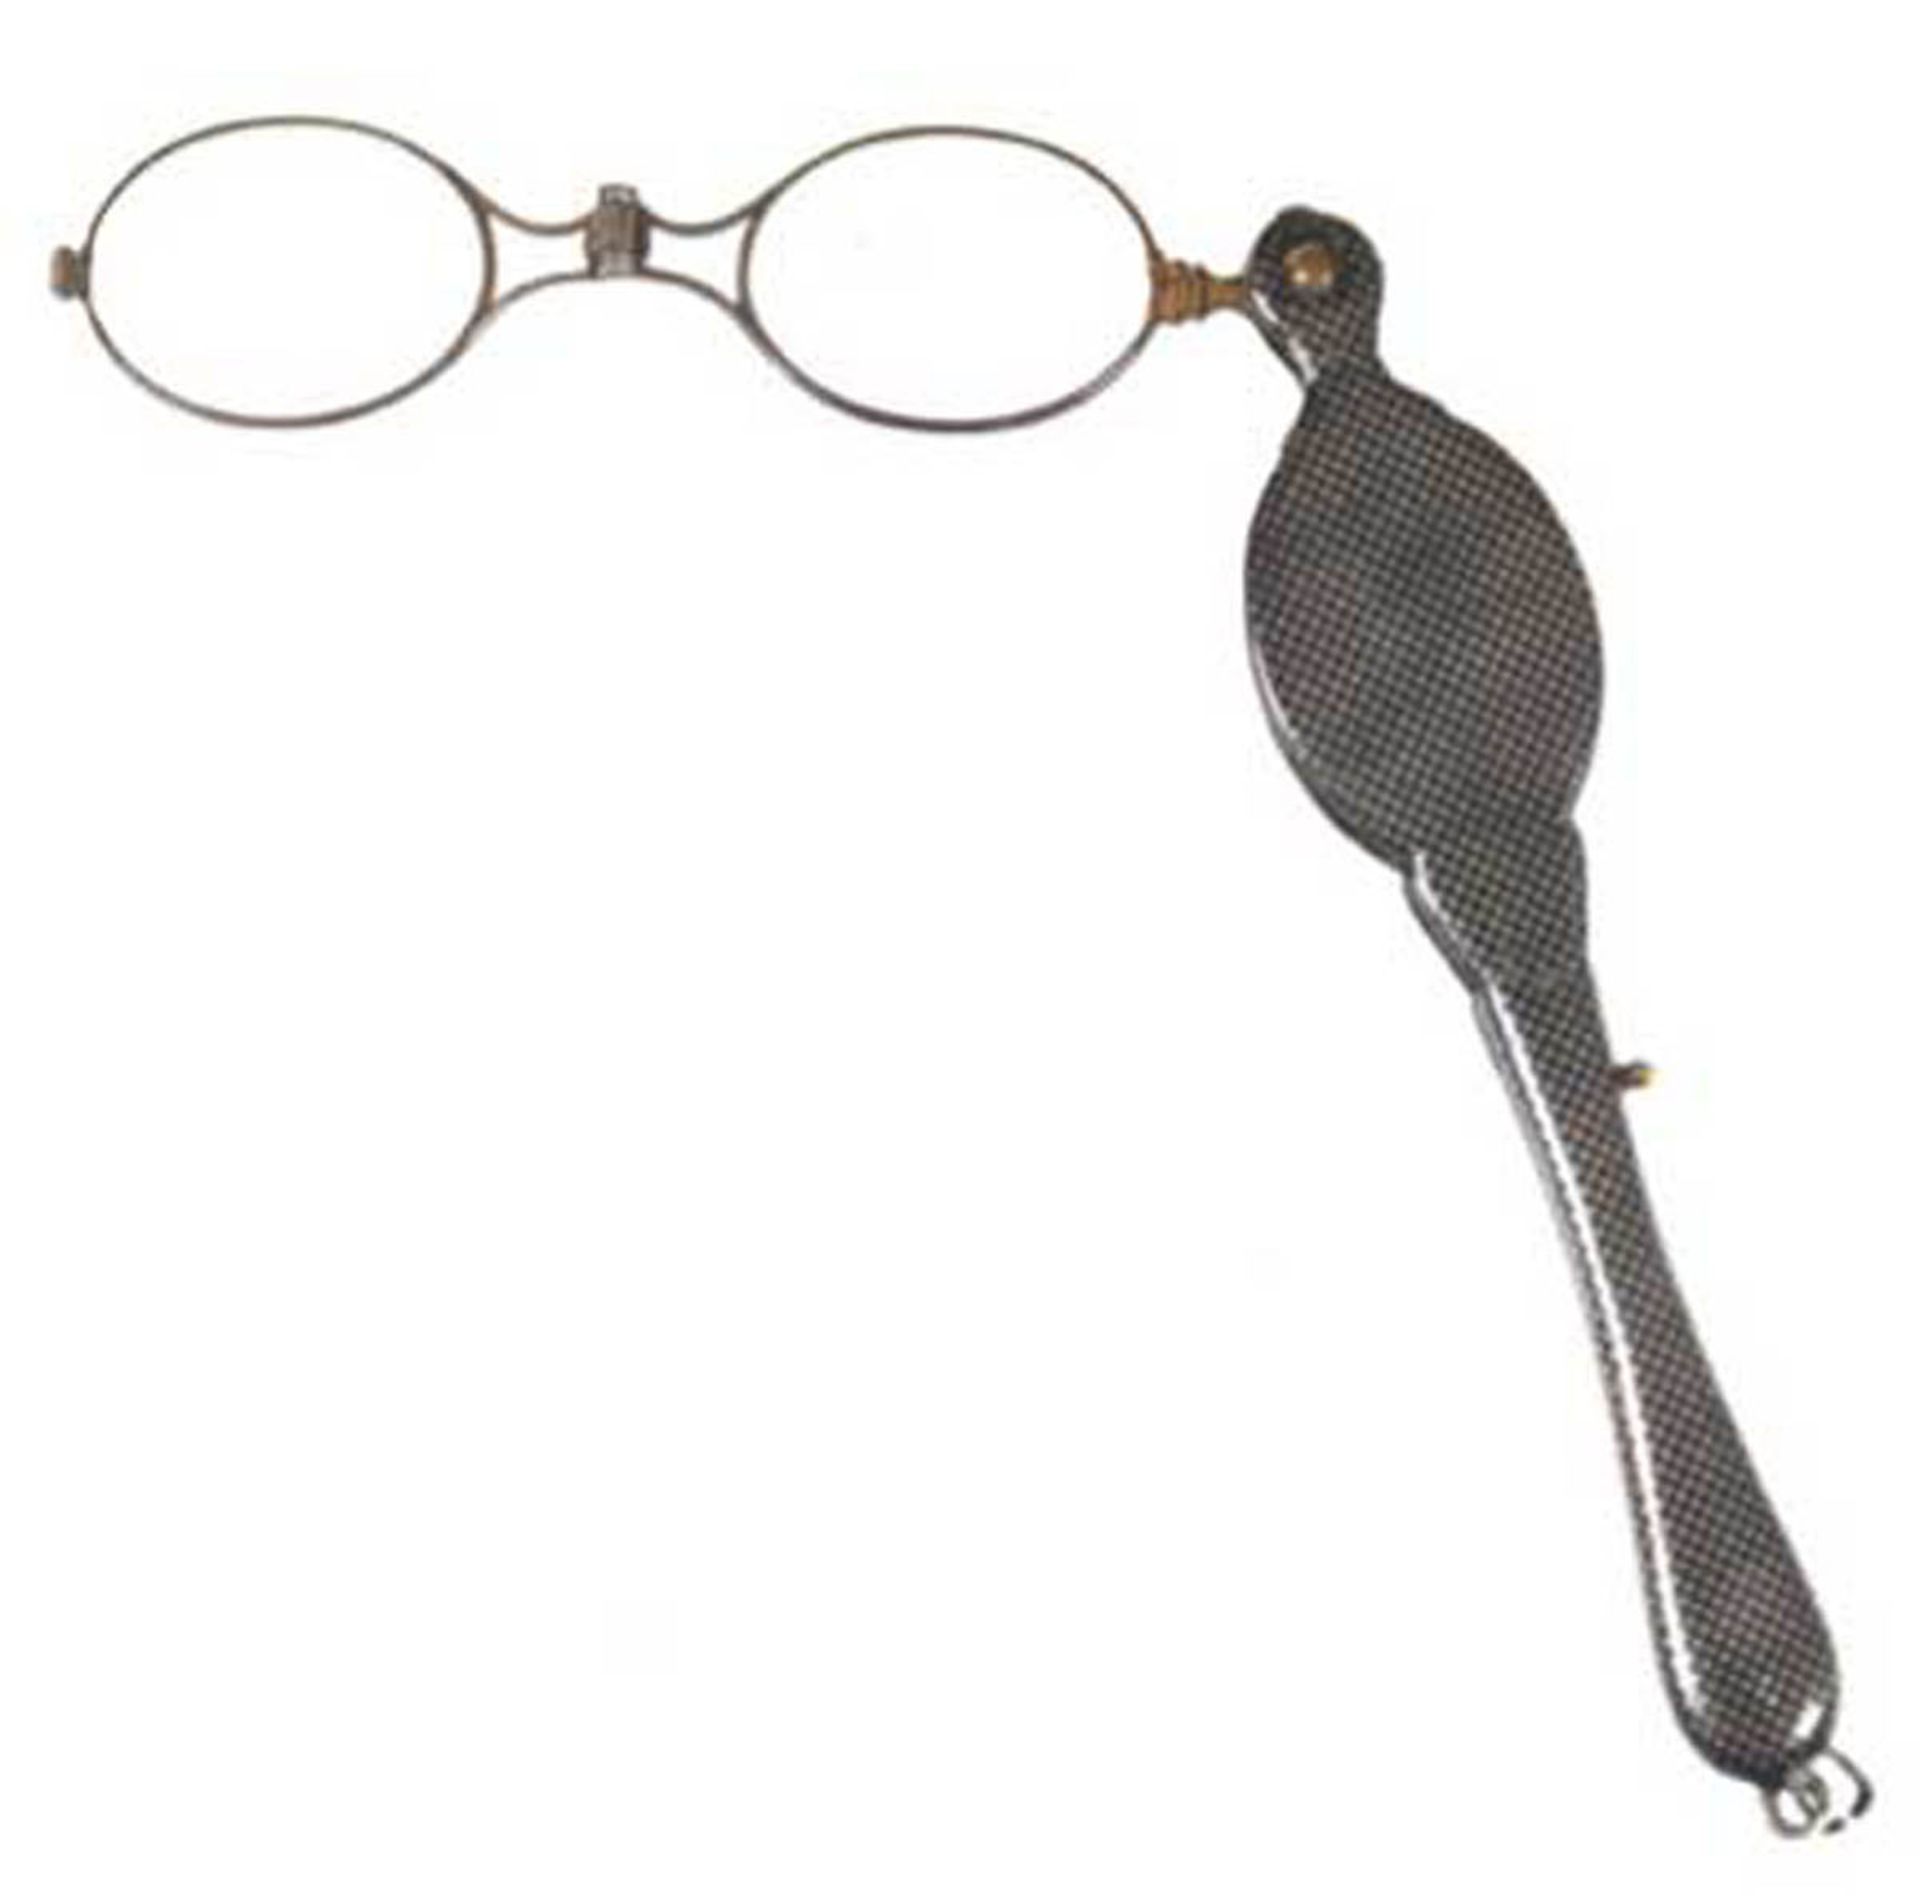 Lorgnette, Silber, undeutl. punziert, Niellodekor, ovale Brillengläser zusammenklappbarund in den